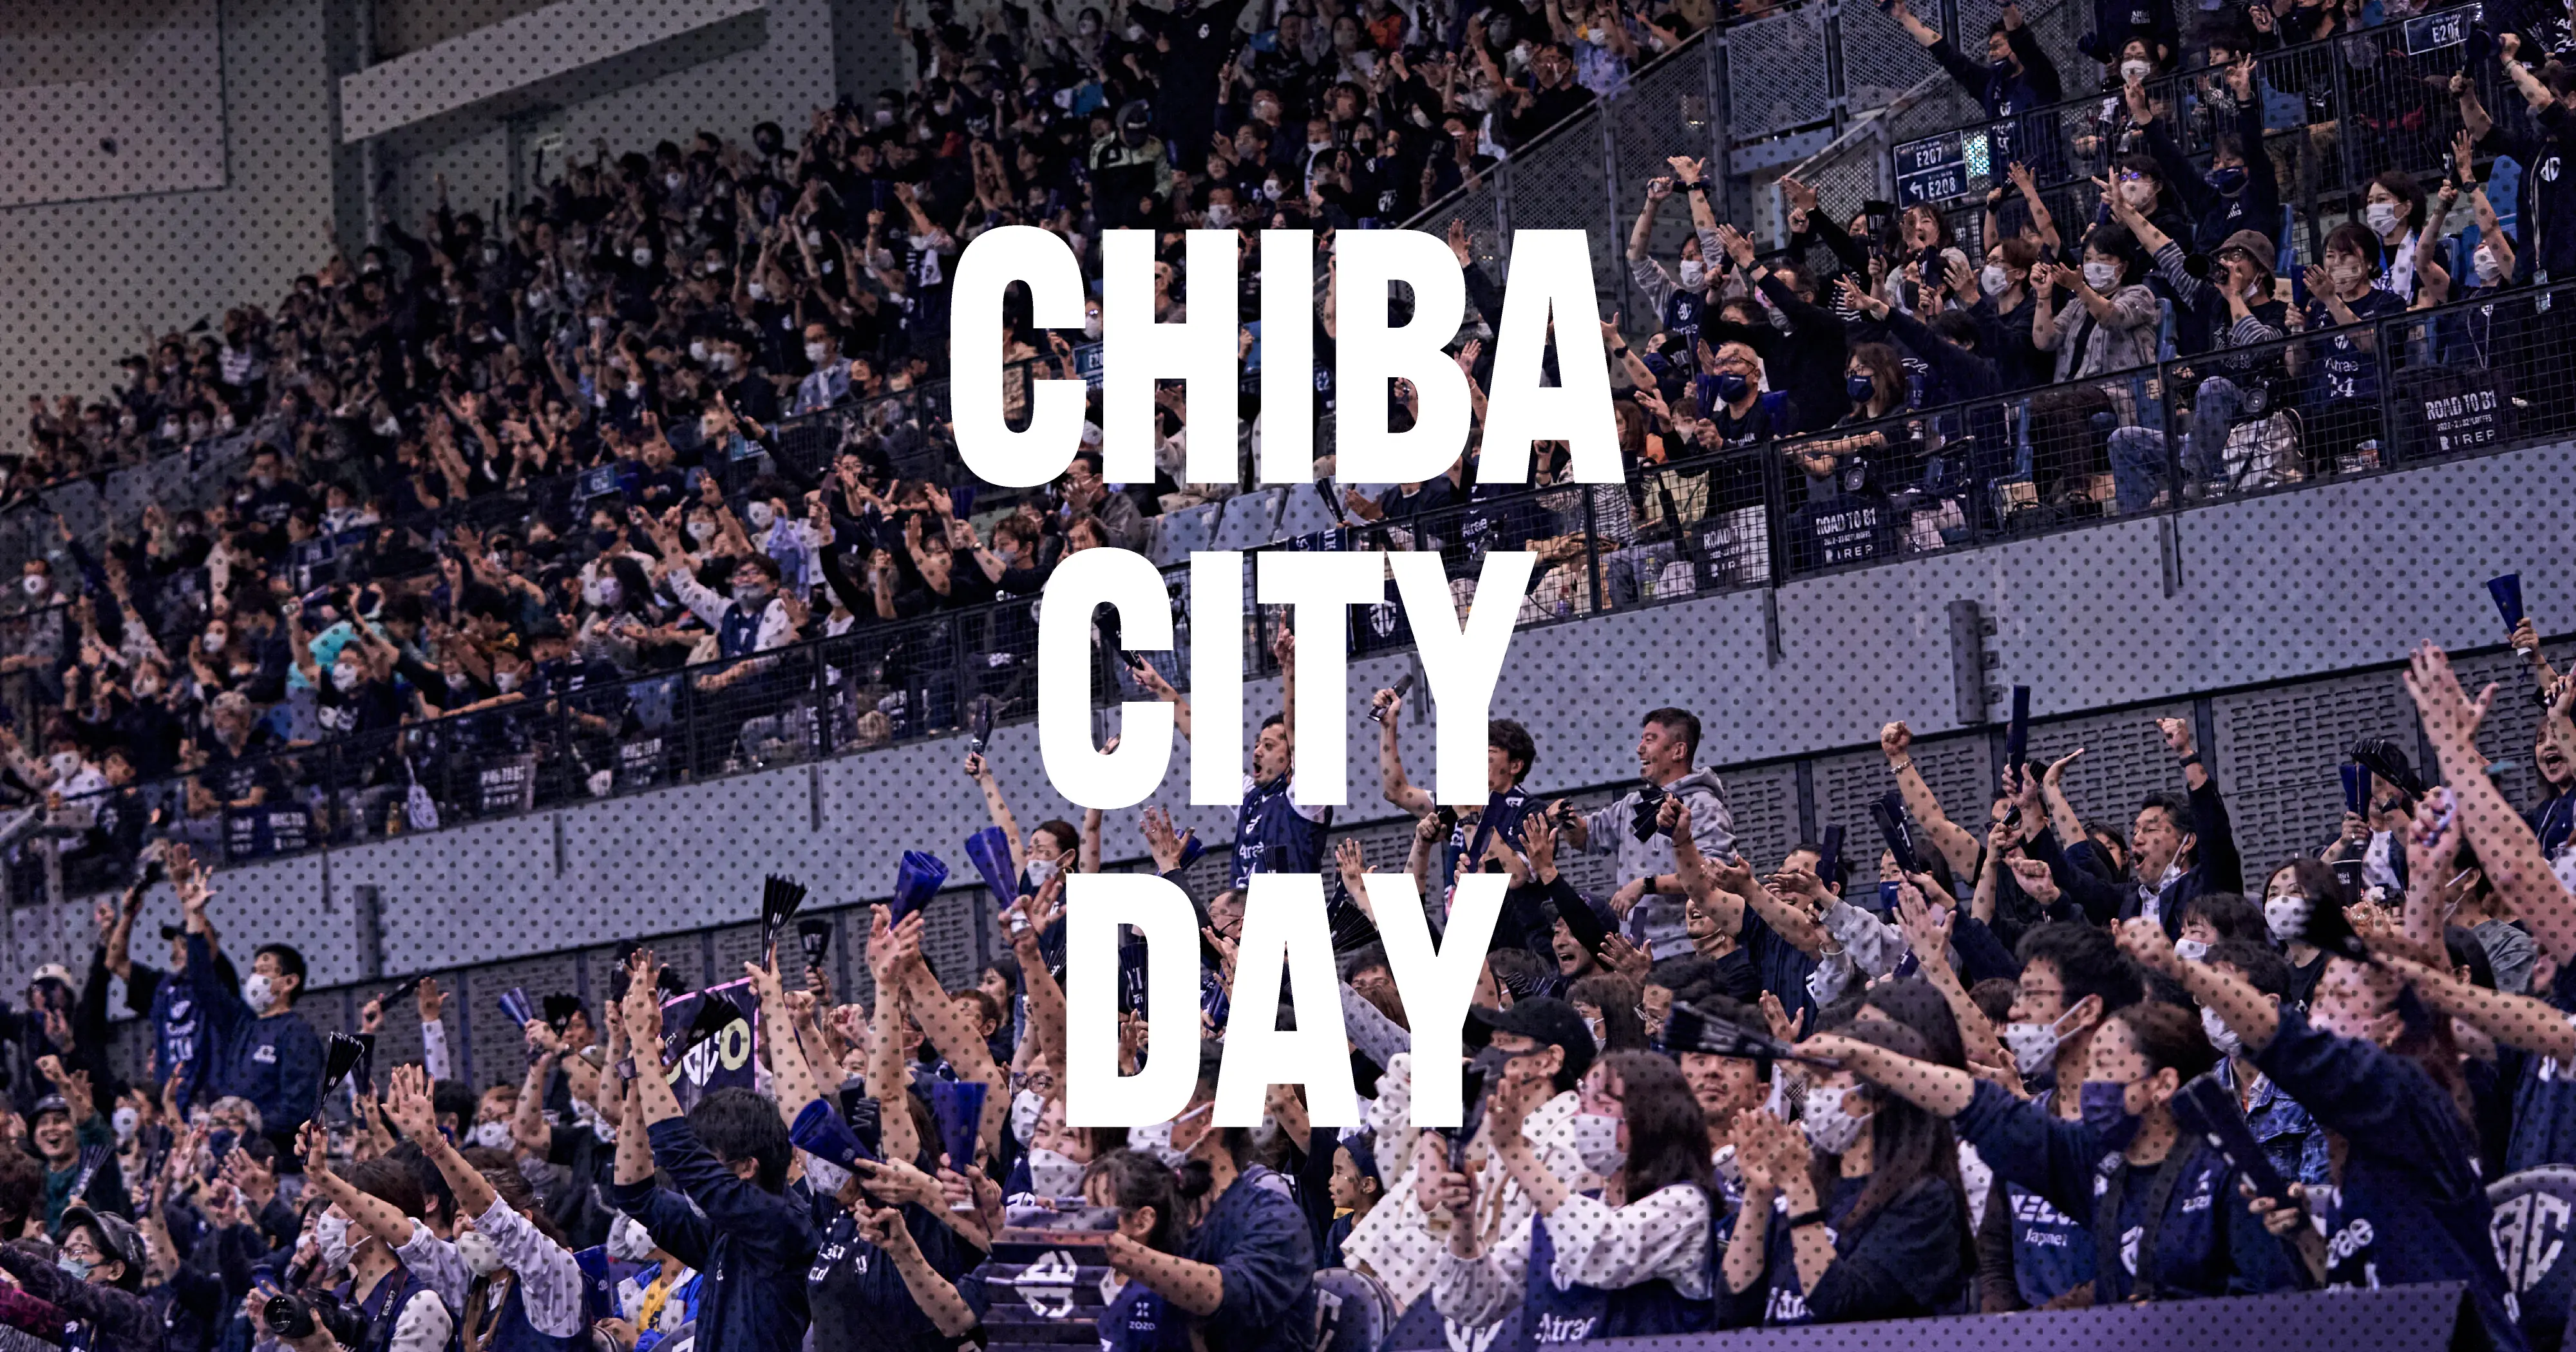 HOMETOWN CHIBA CITY DAY